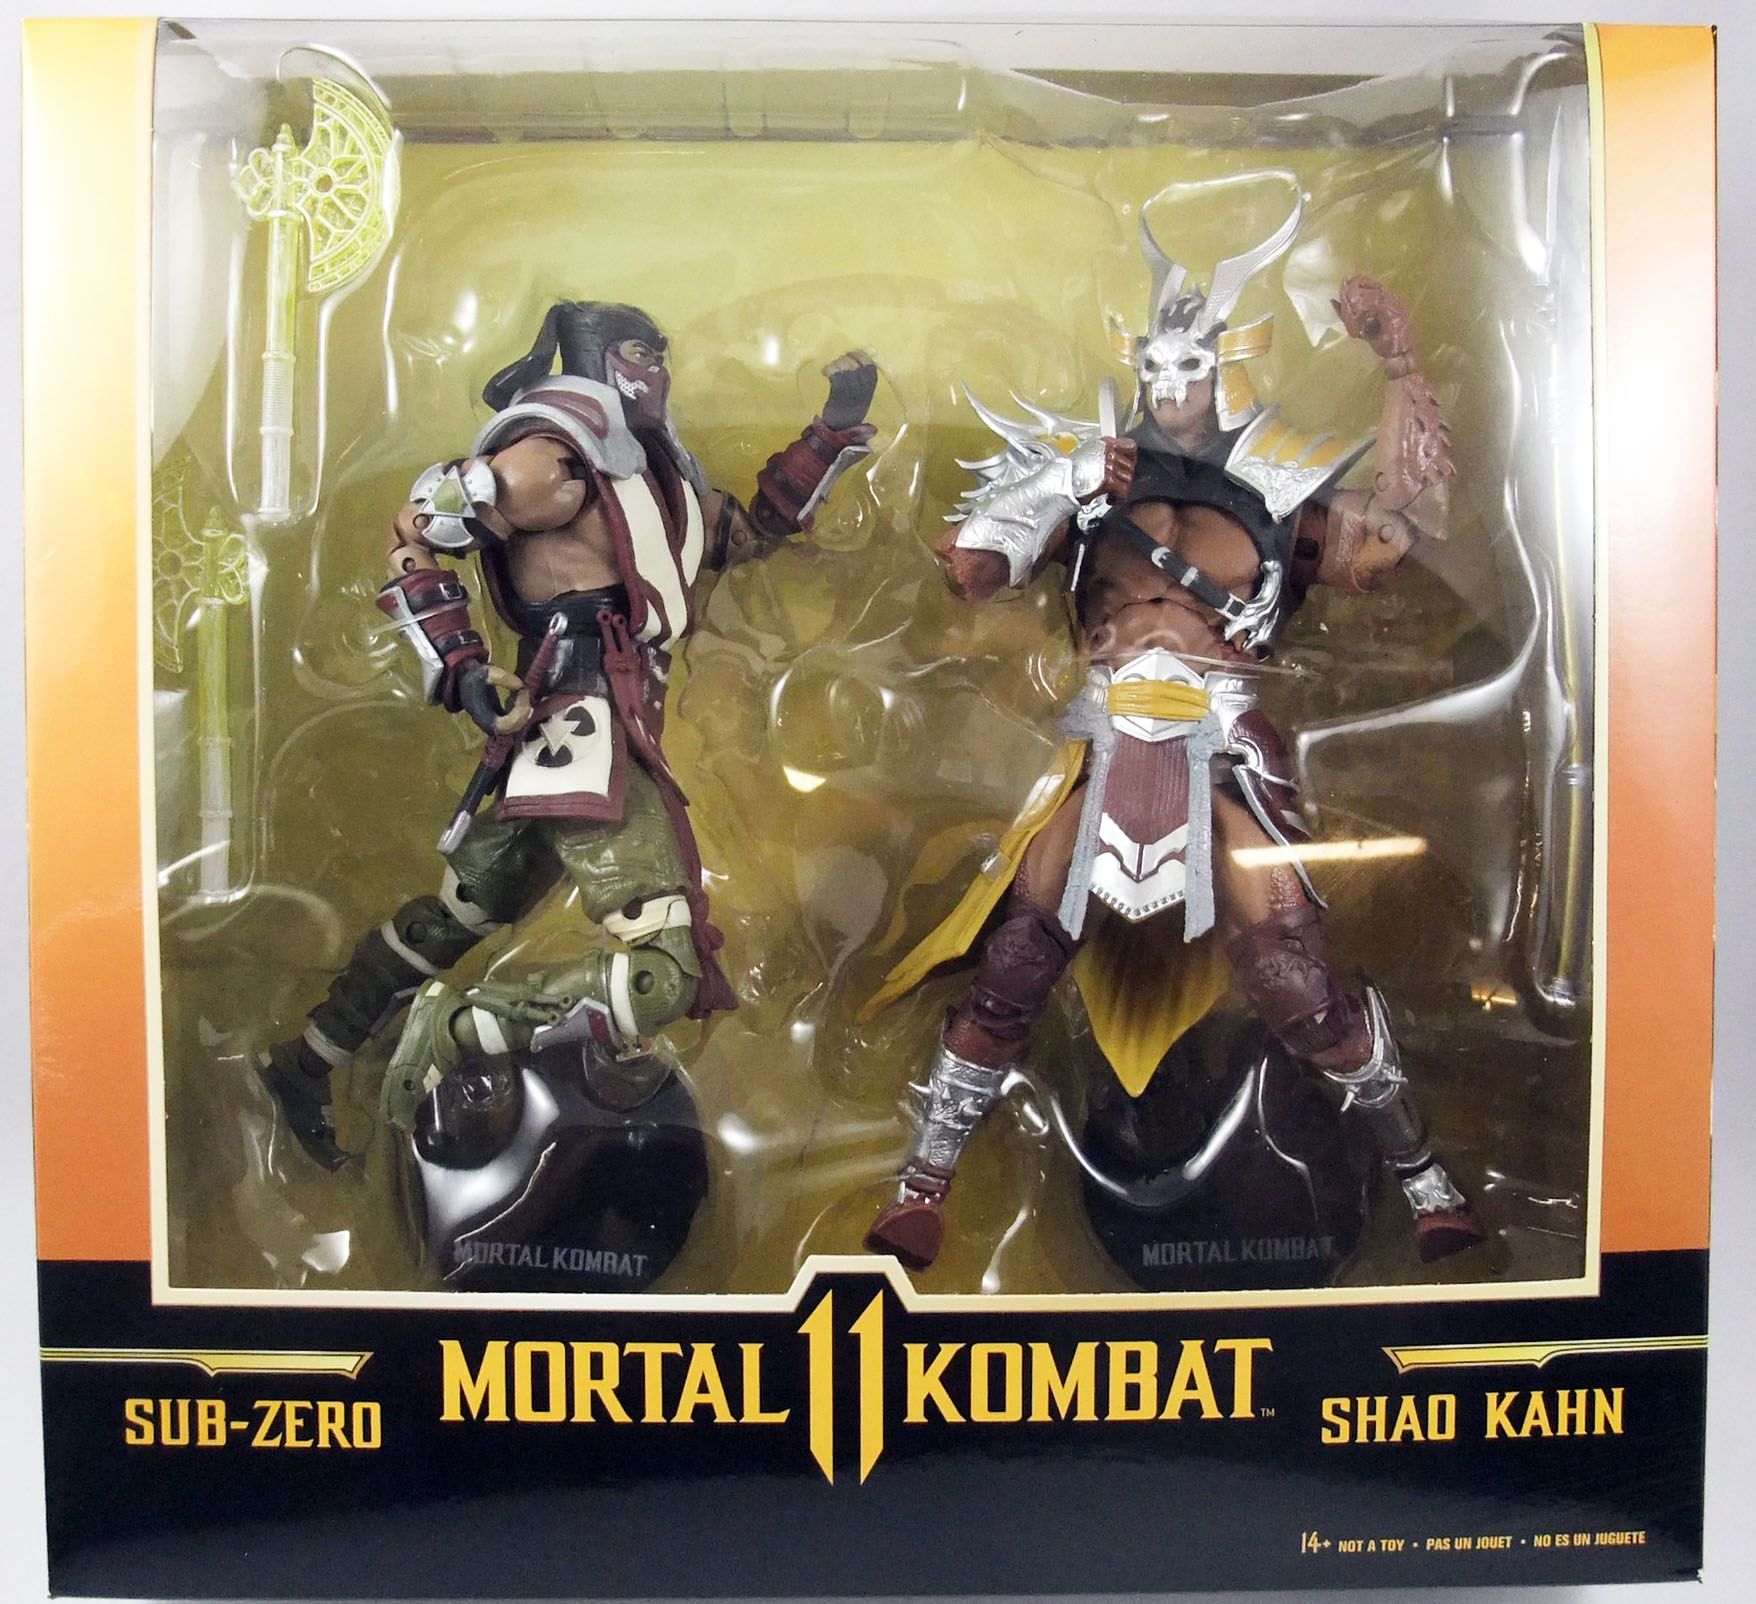 Mortal Kombat Shao Kahn Action Figure 